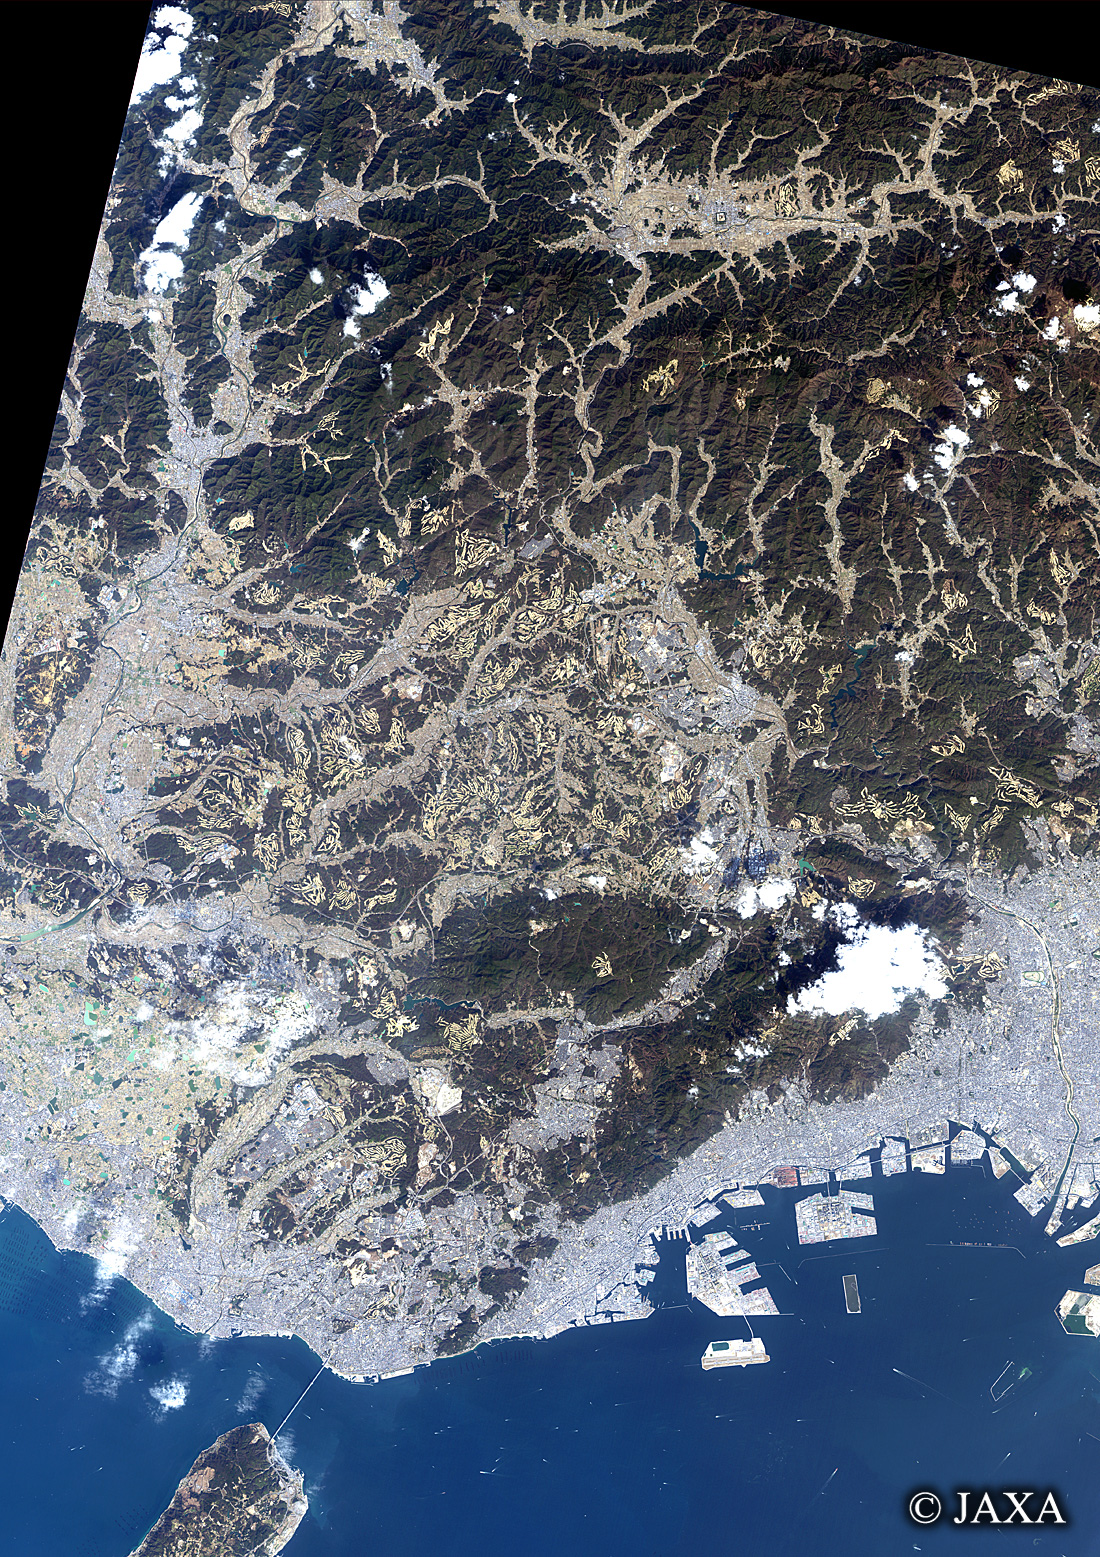 だいちから見た日本の都市 兵庫県:衛星画像